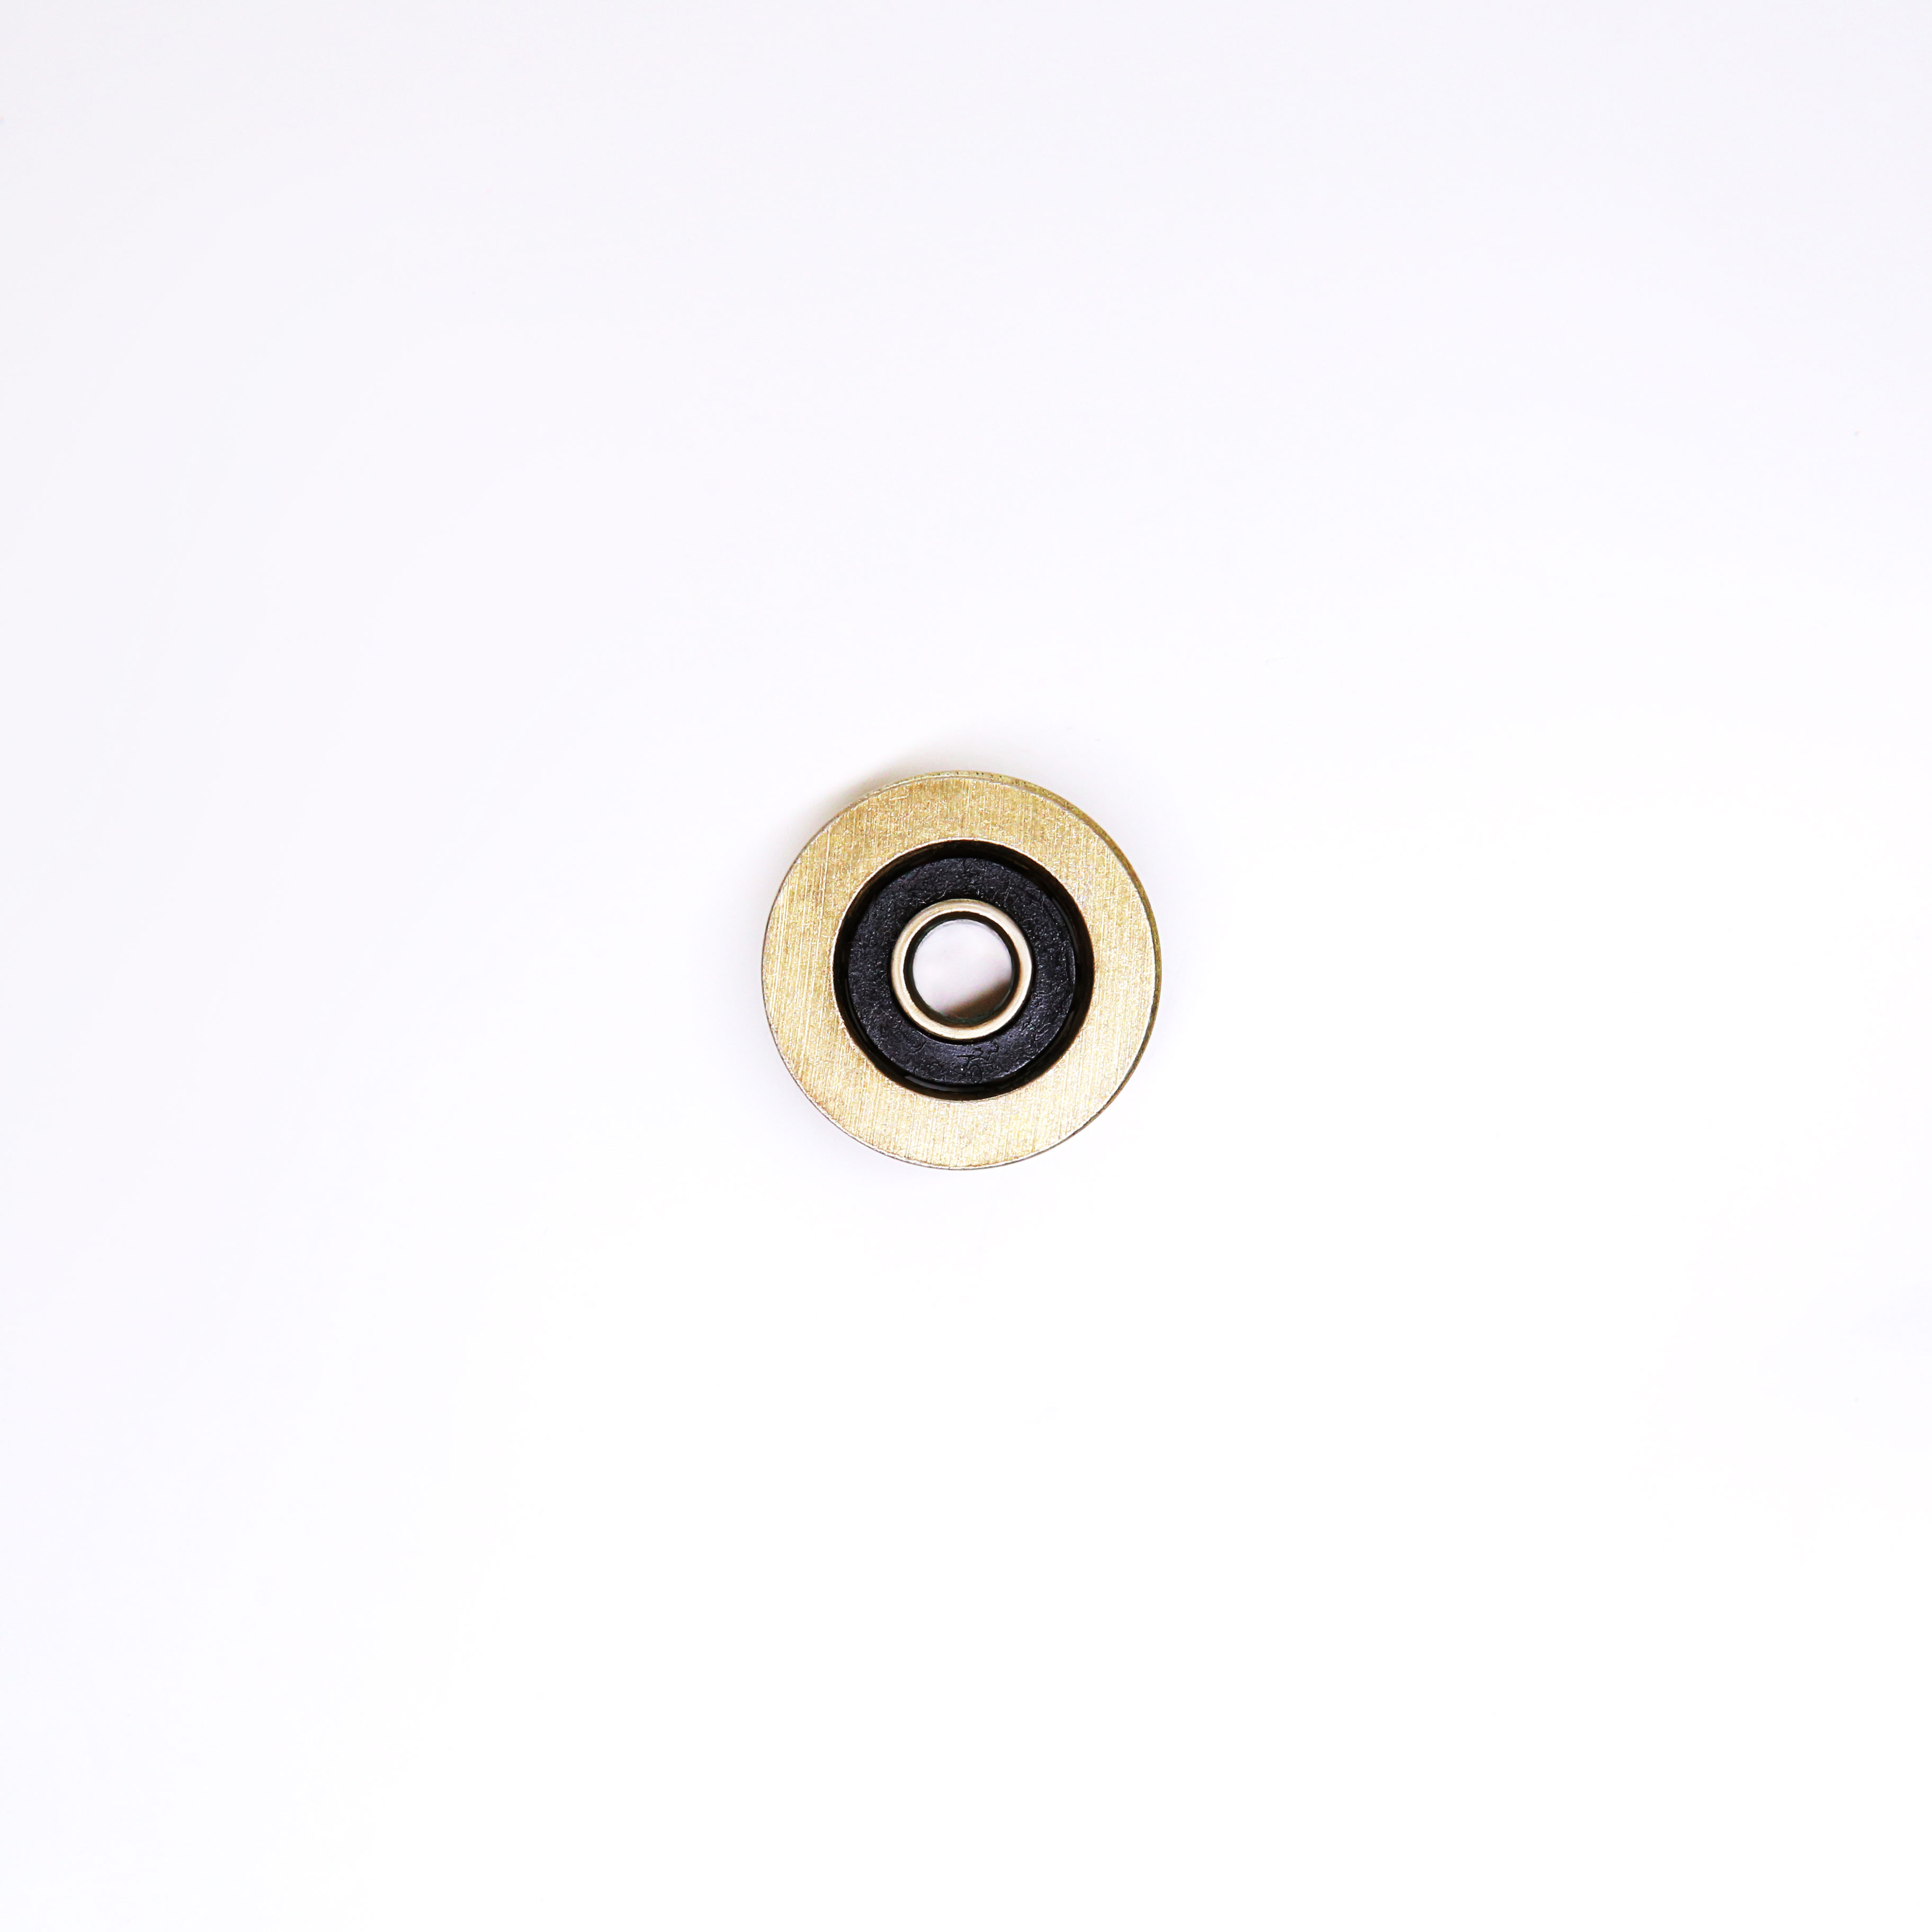 4mm inner bearing